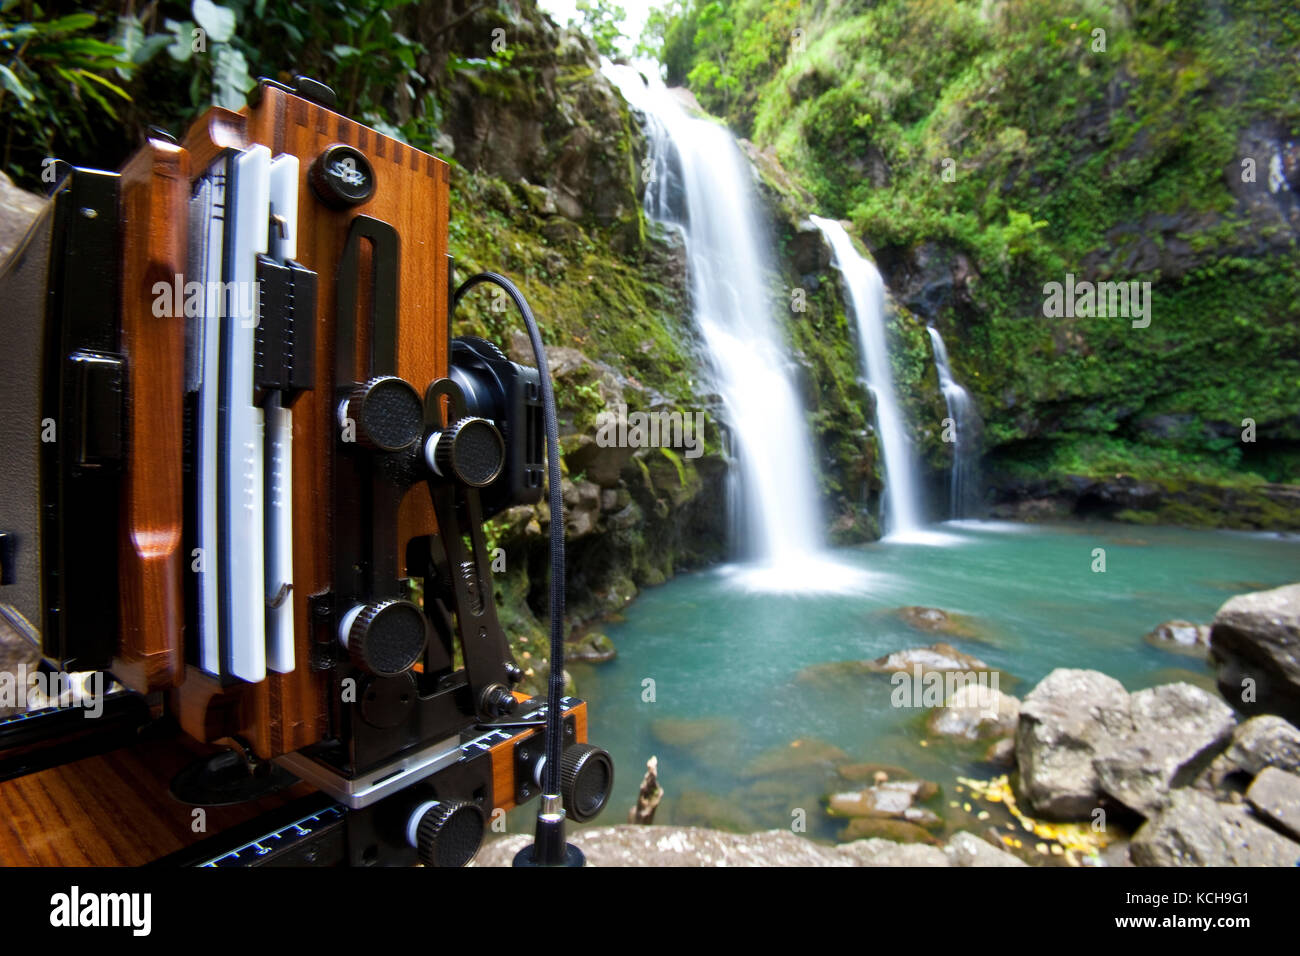 View camera set up at Waikani Falls (three bears falls), Maui, Hawaii Stock Photo